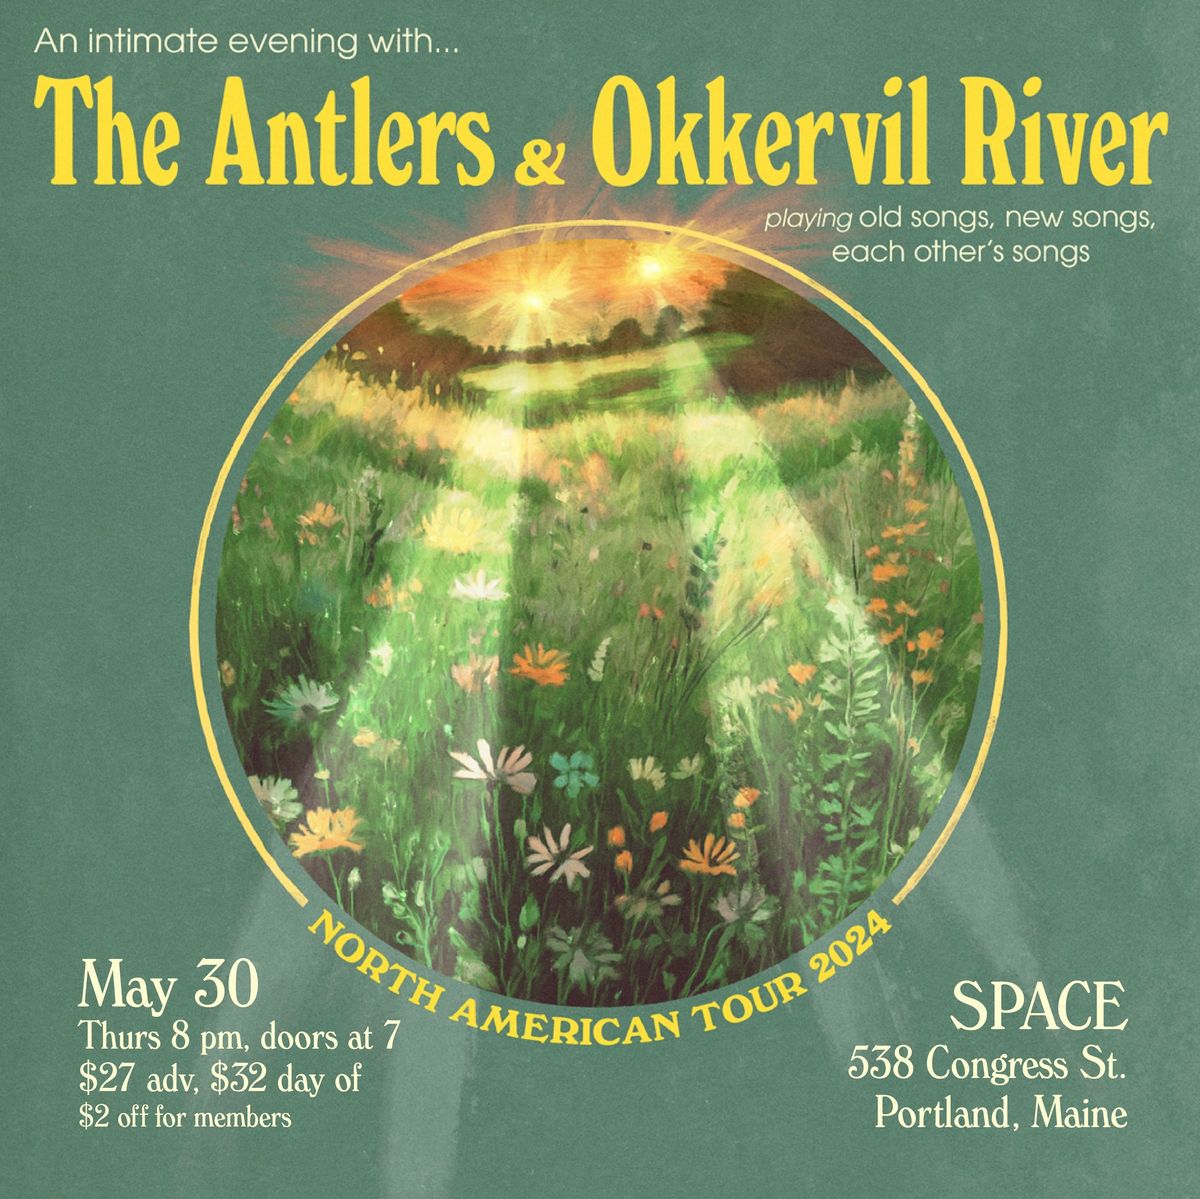 The Antlers & Okkervil River